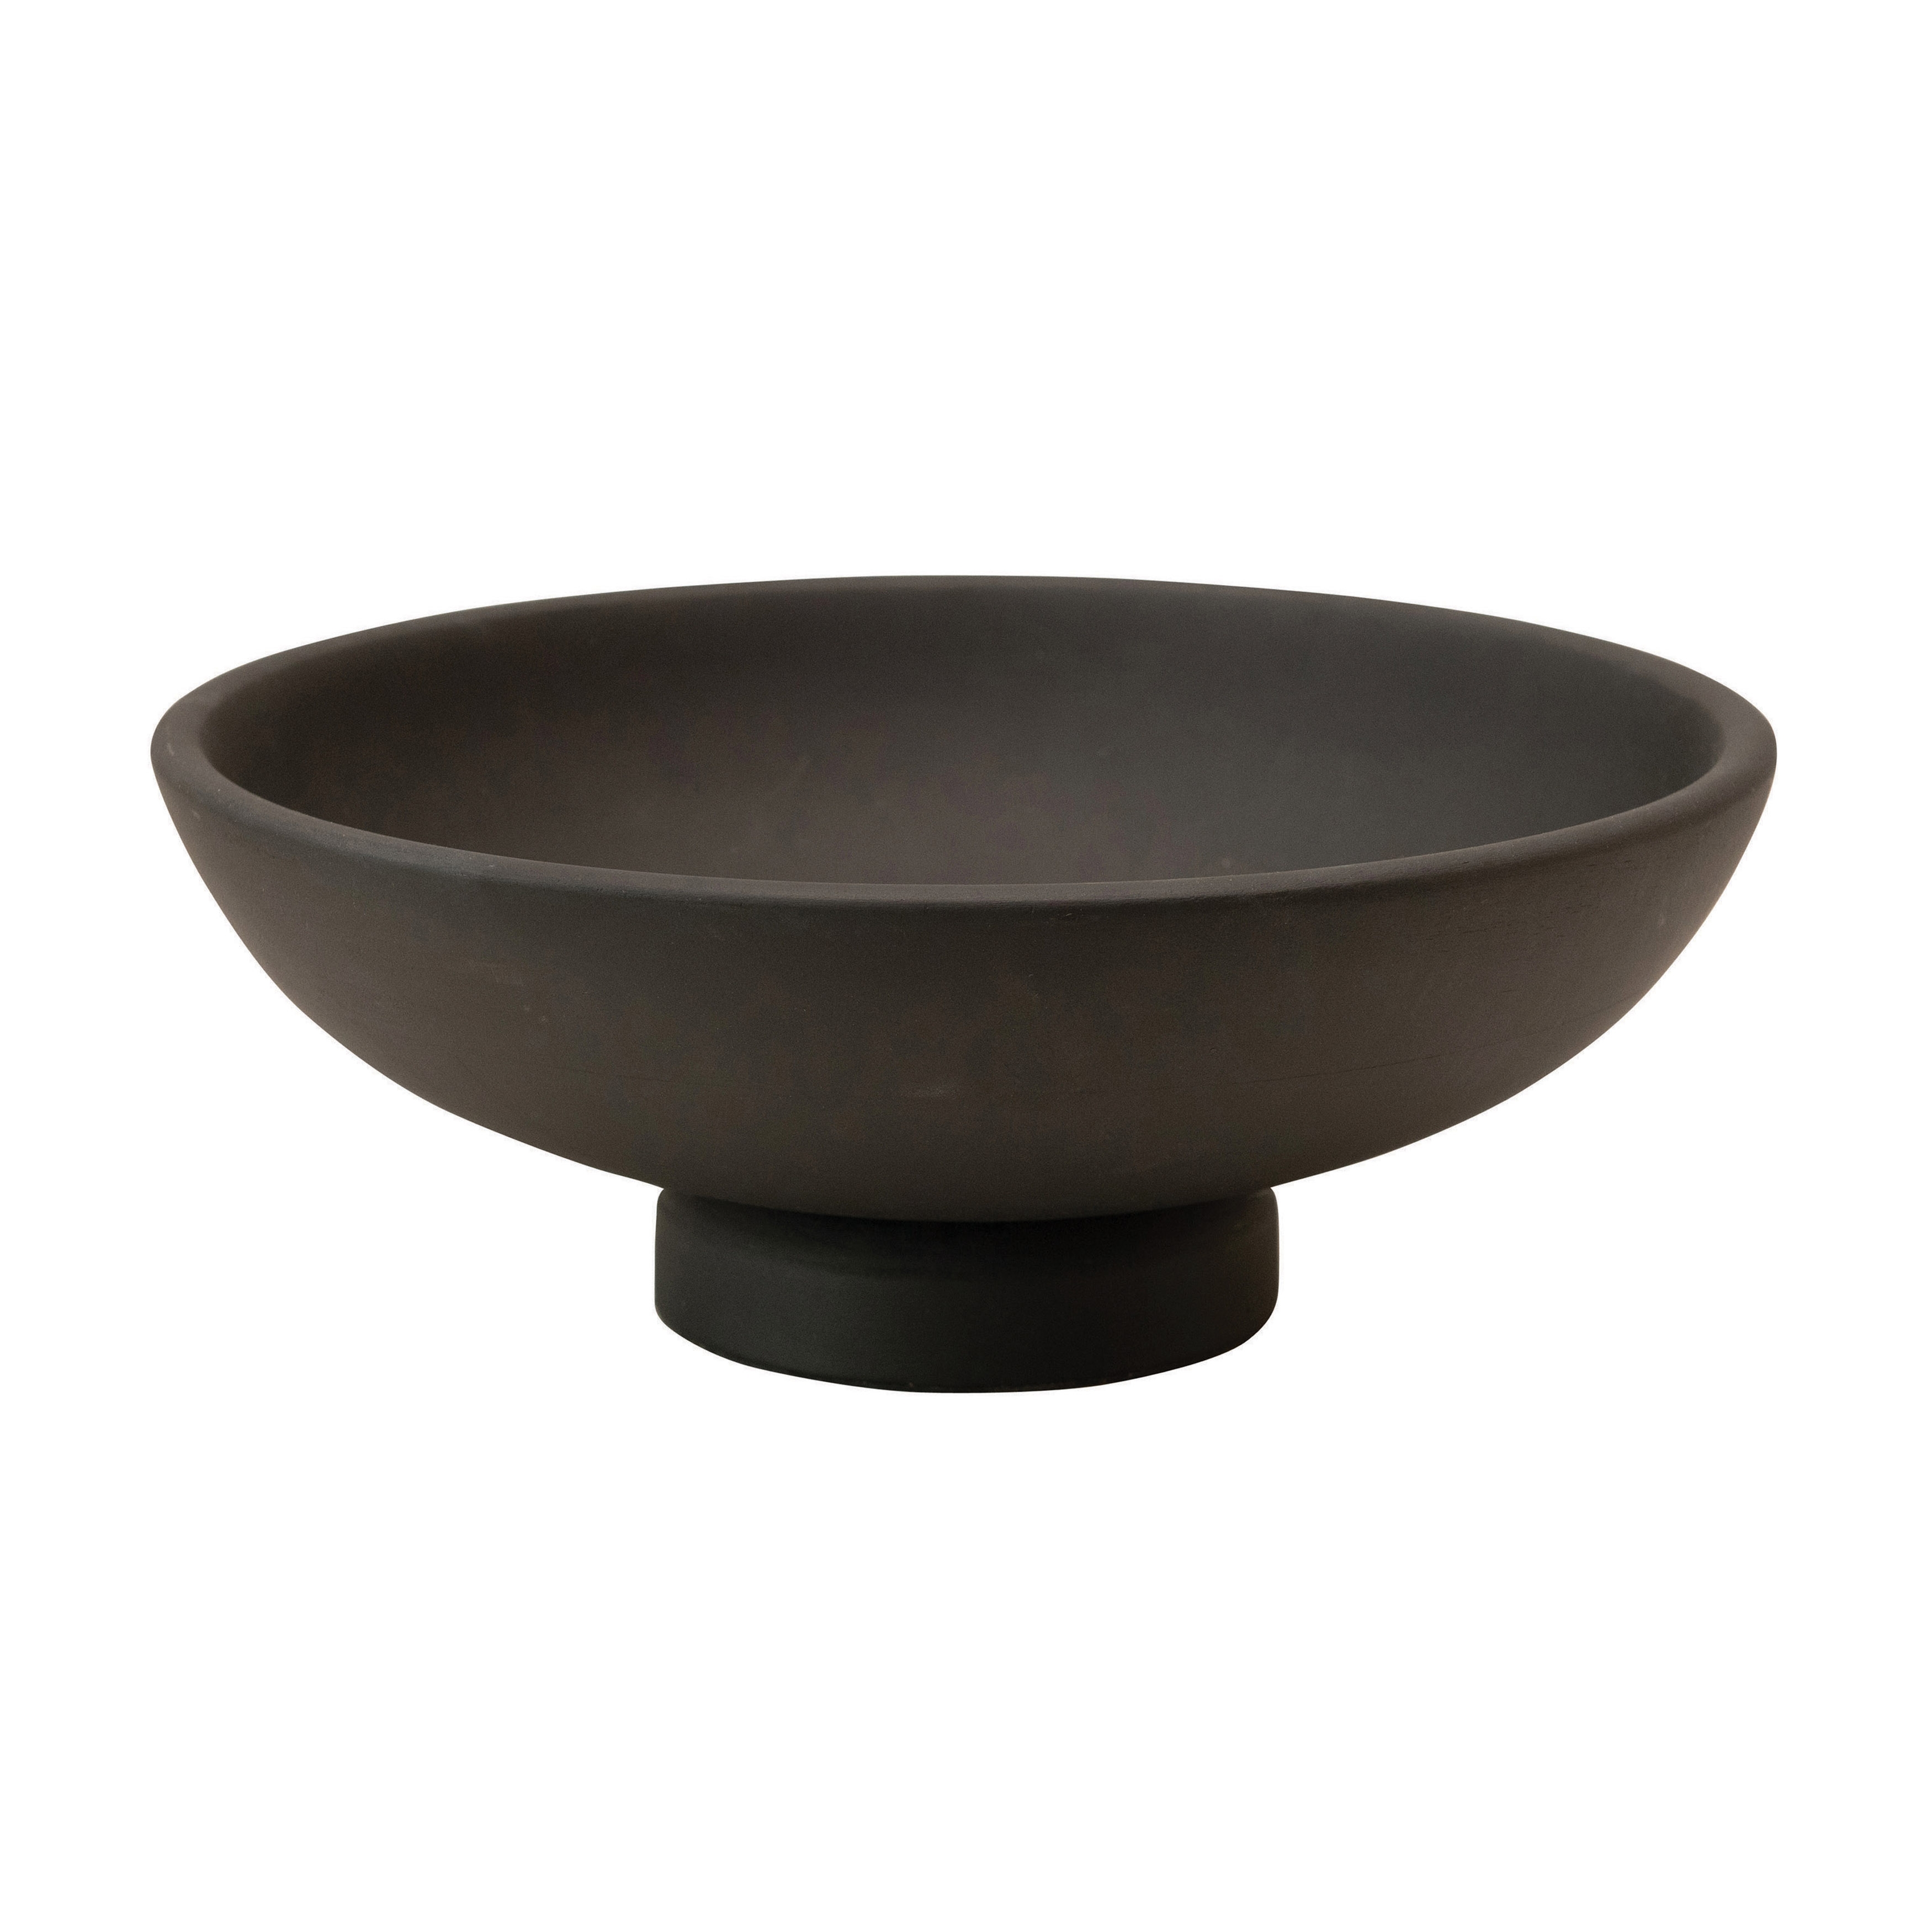 Mango Wood Footed Bowl, Black - Image 1